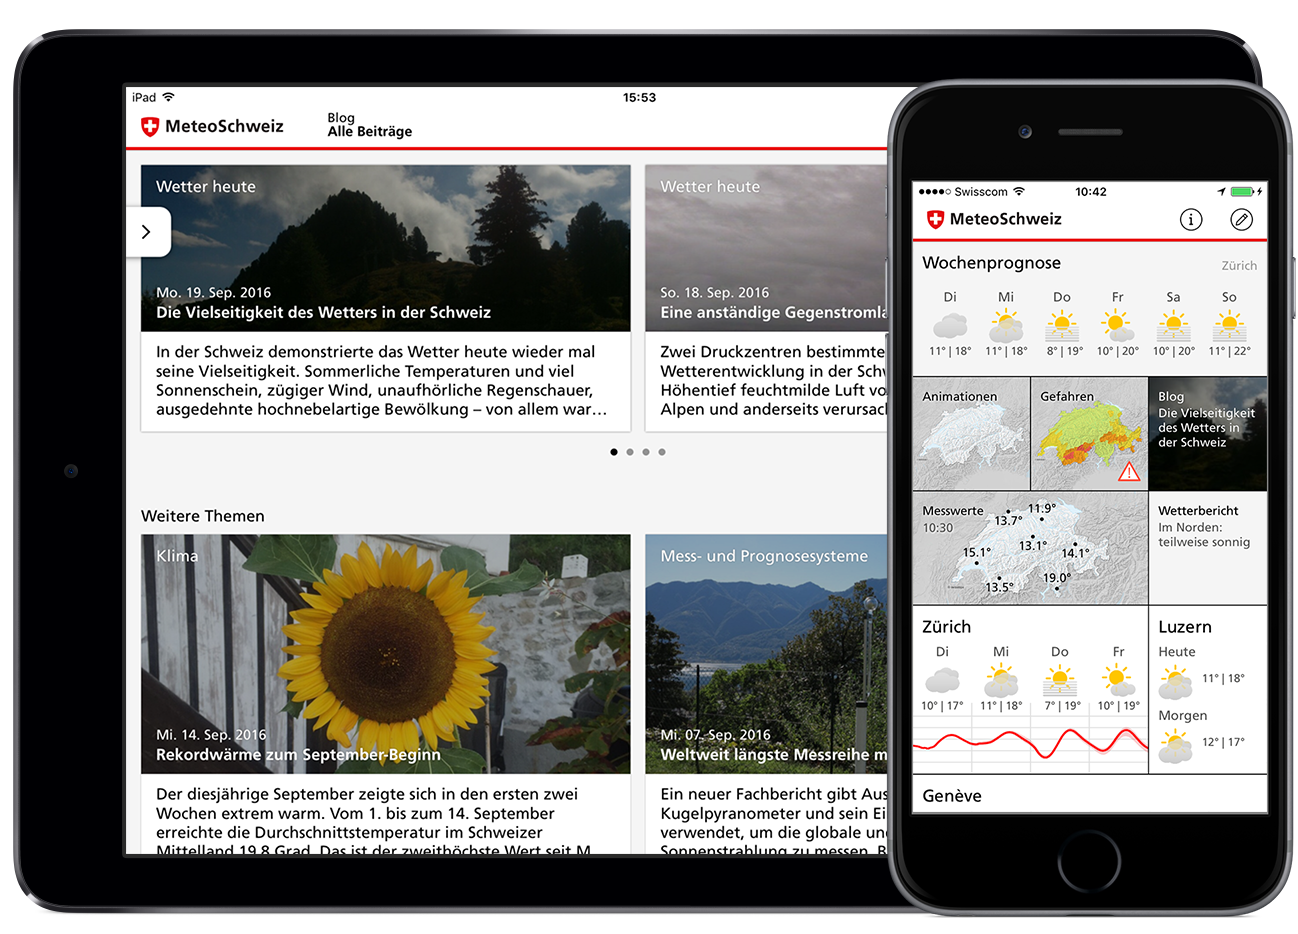 Alarmmeldungen kommen neu auch über die Wetter-App